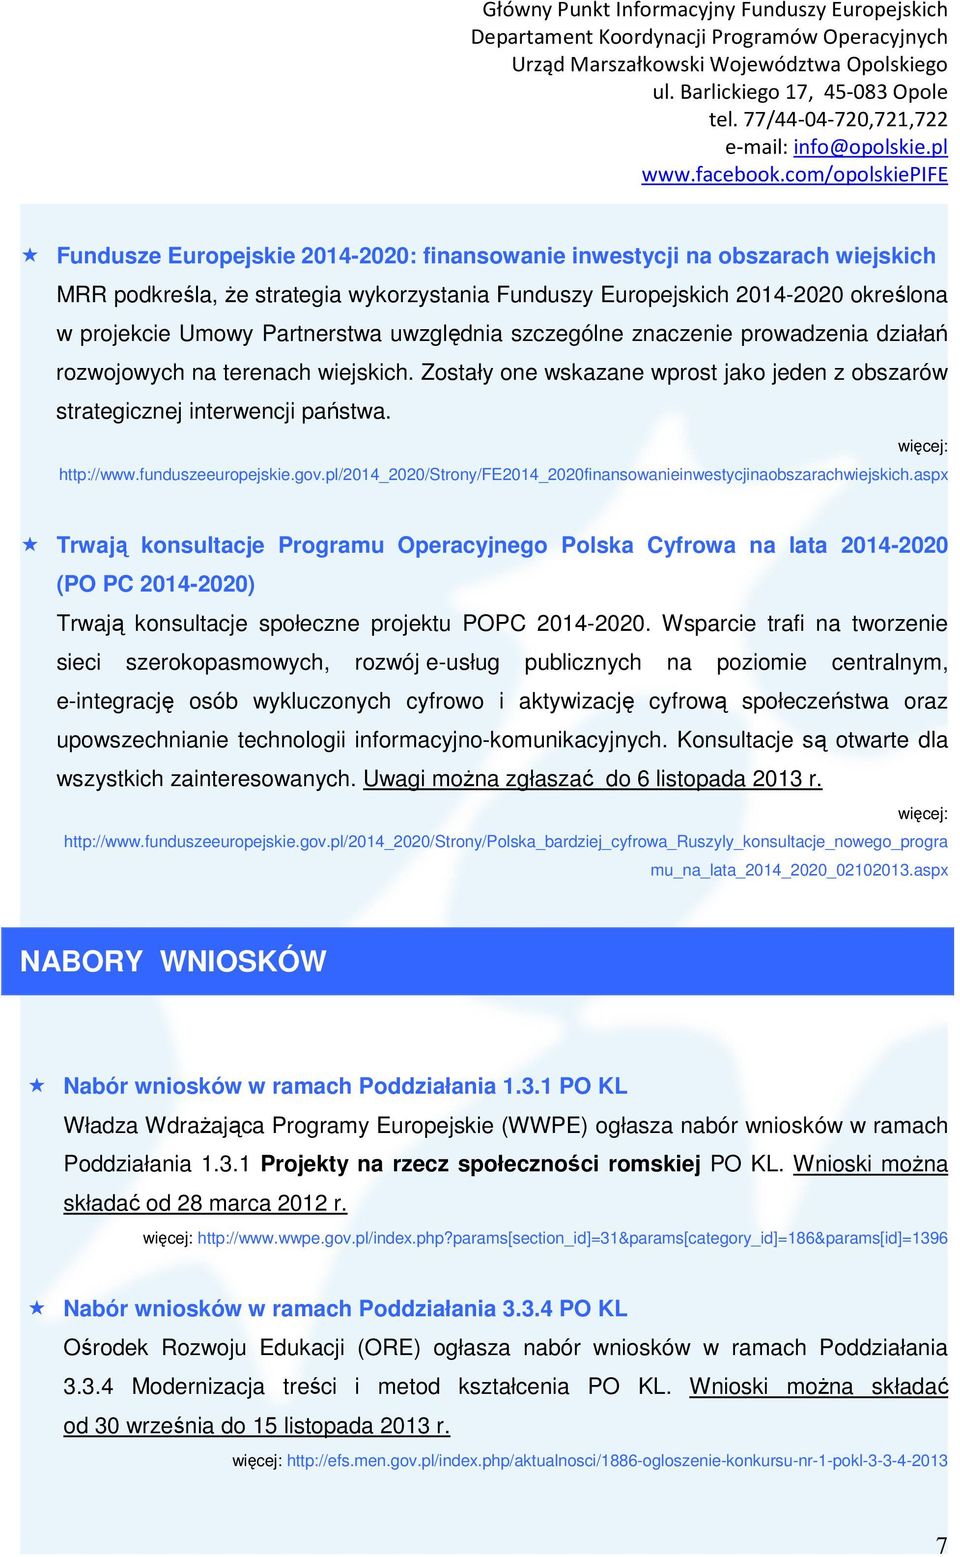 funduszeeuropejskie.gov.pl/2014_2020/strony/fe2014_2020finansowanieinwestycjinaobszarachwiejskich.